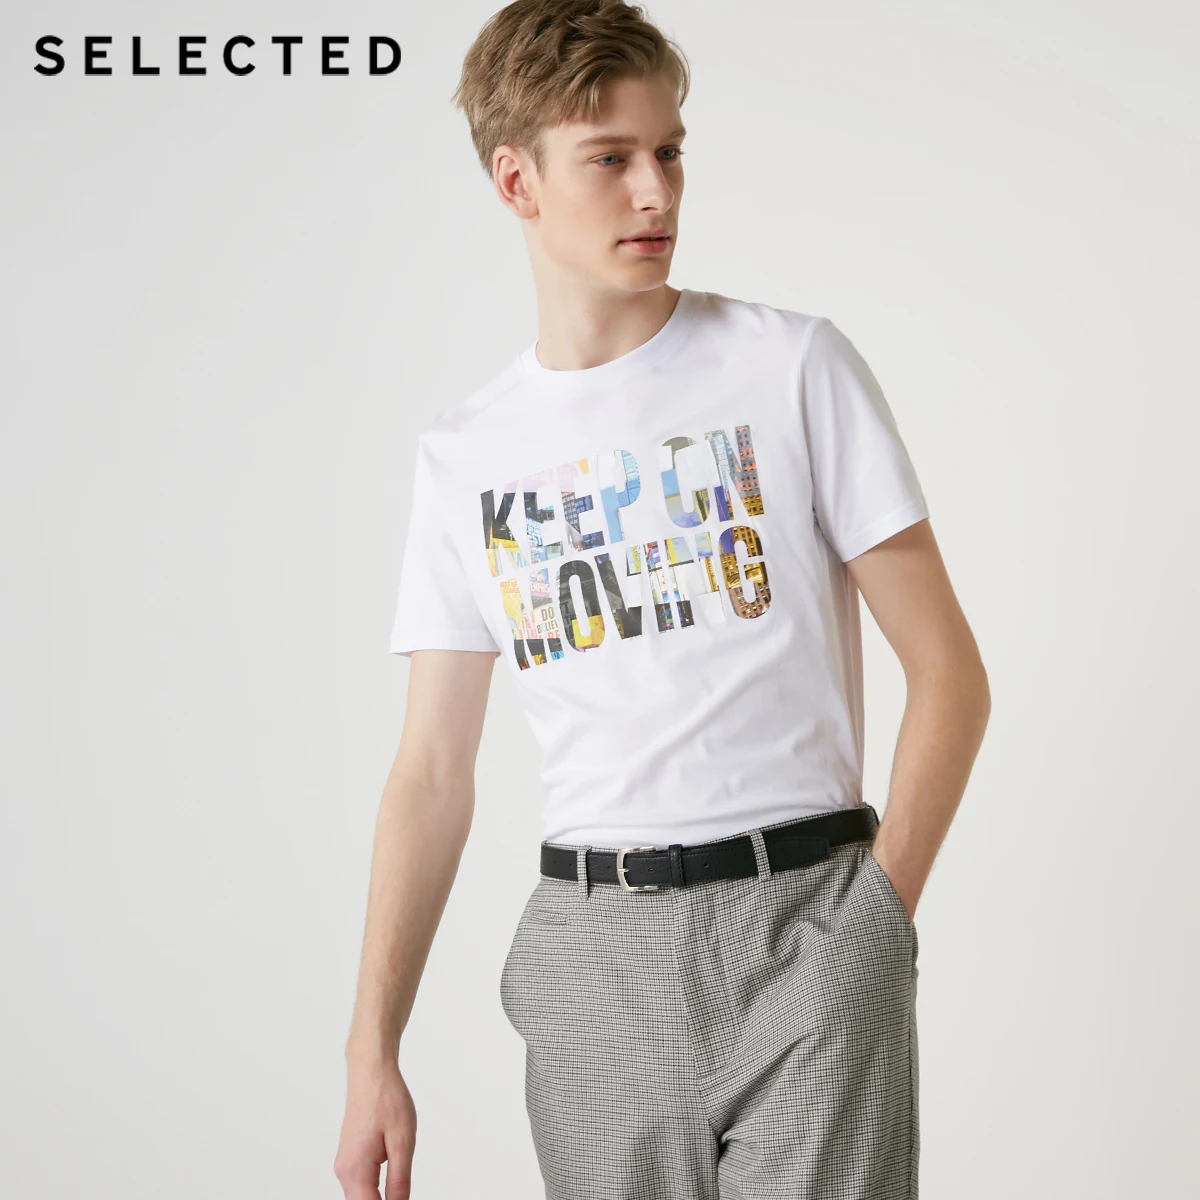 Отборная мужская летняя футболка с короткими рукавами из хлопка с буквенным принтом S | 419201575 - Цвет: OPTIC WHITE